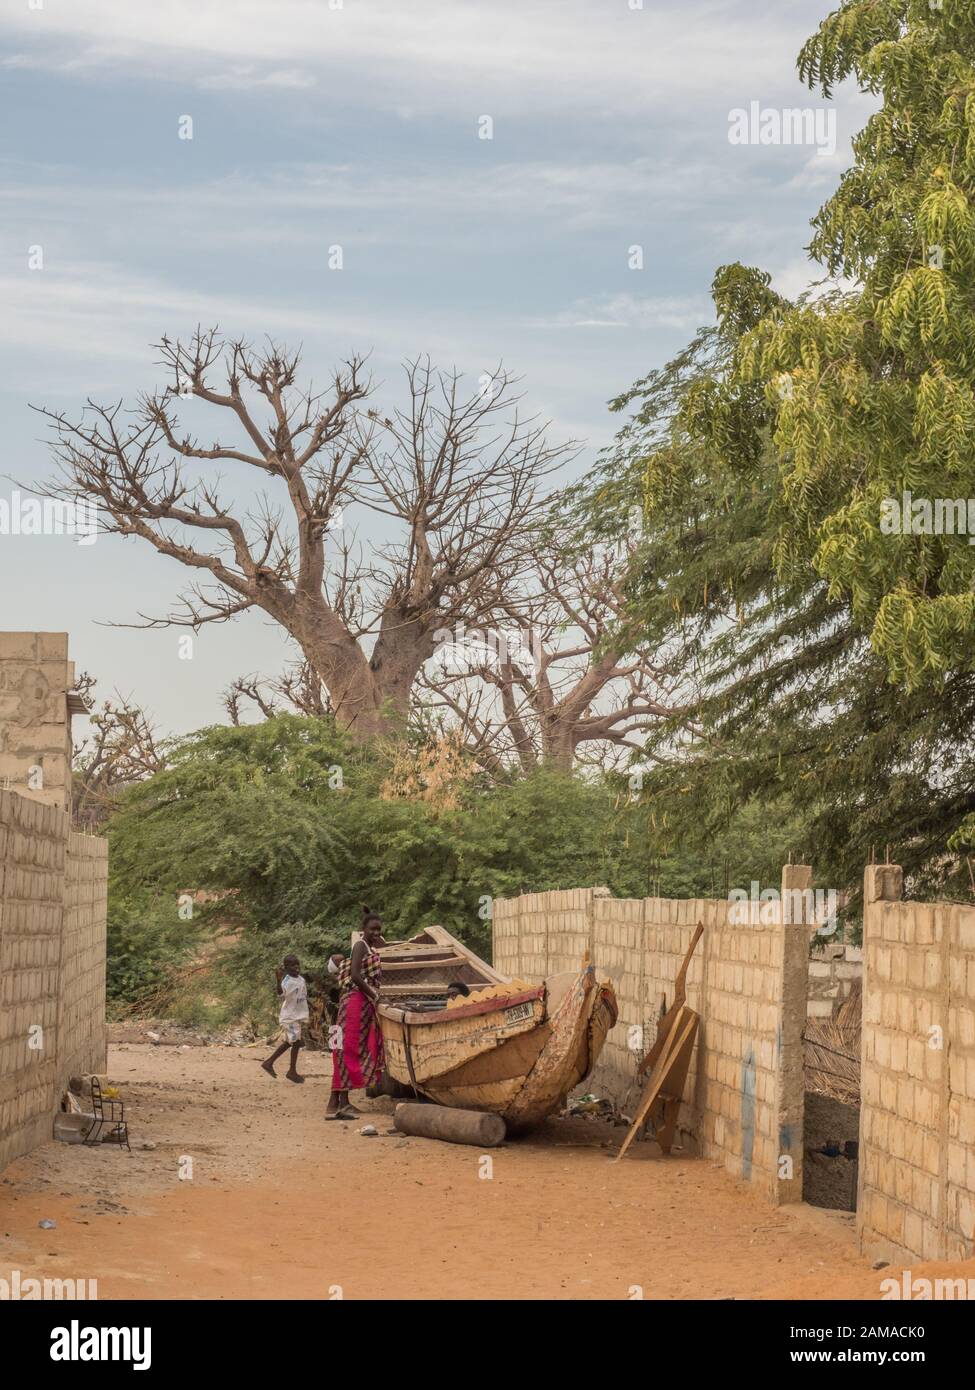 Sénégal, Afrique - Janvier, 24, 2019: Un énorme baobab arbres à côté de la route rouge africaine.arbre de bonheur, Sénégal. Afrique. Banque D'Images